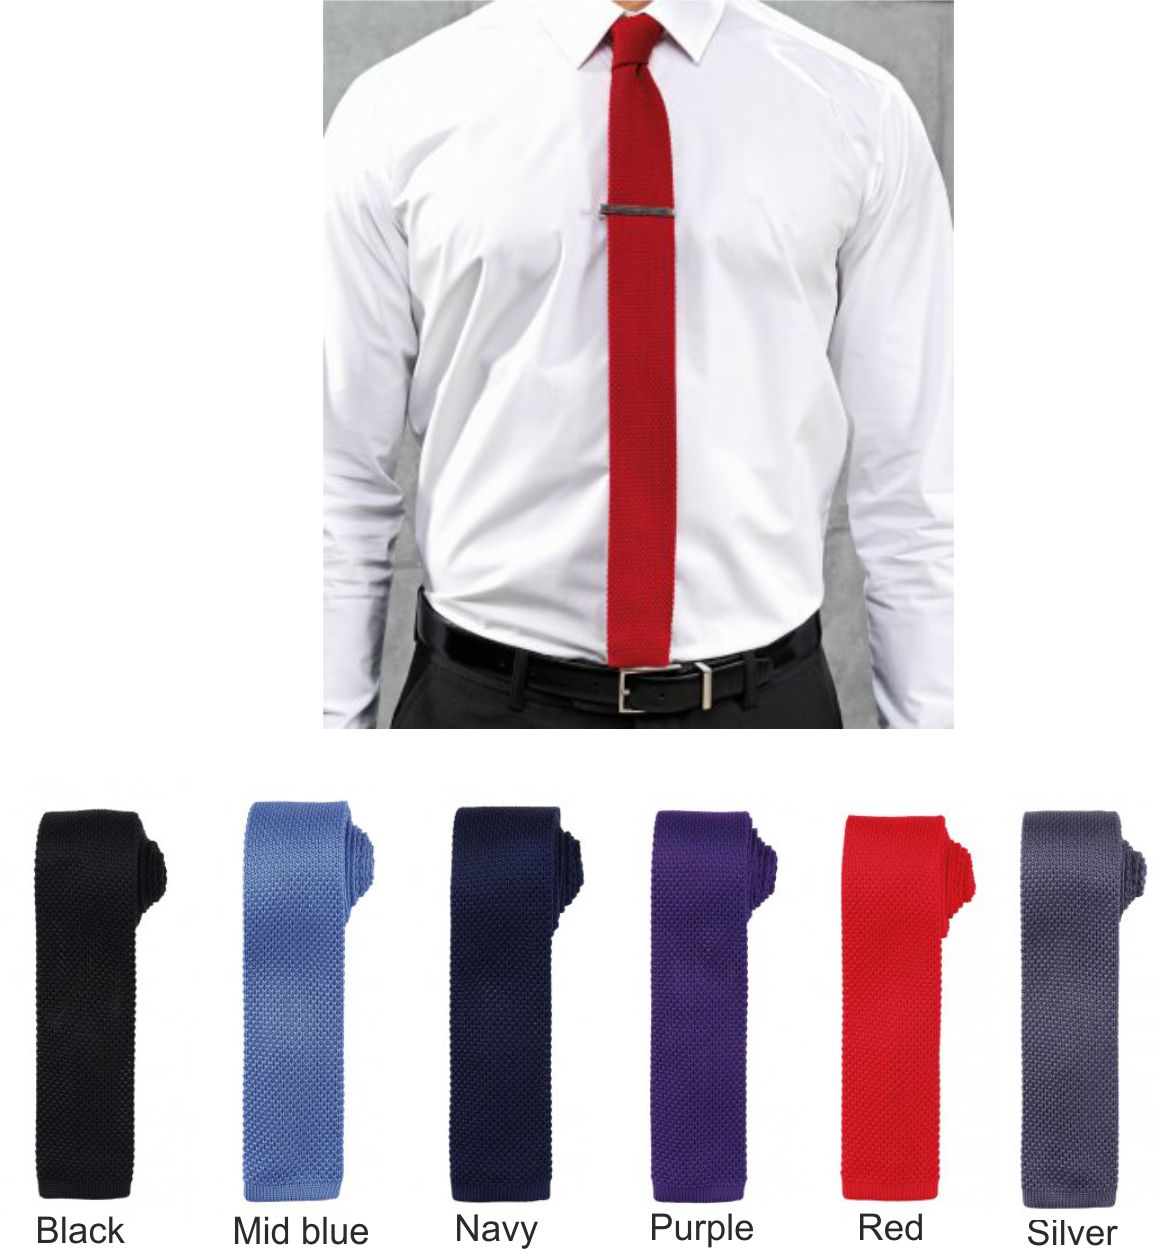 Premier PR789 Slim Knitted Tie